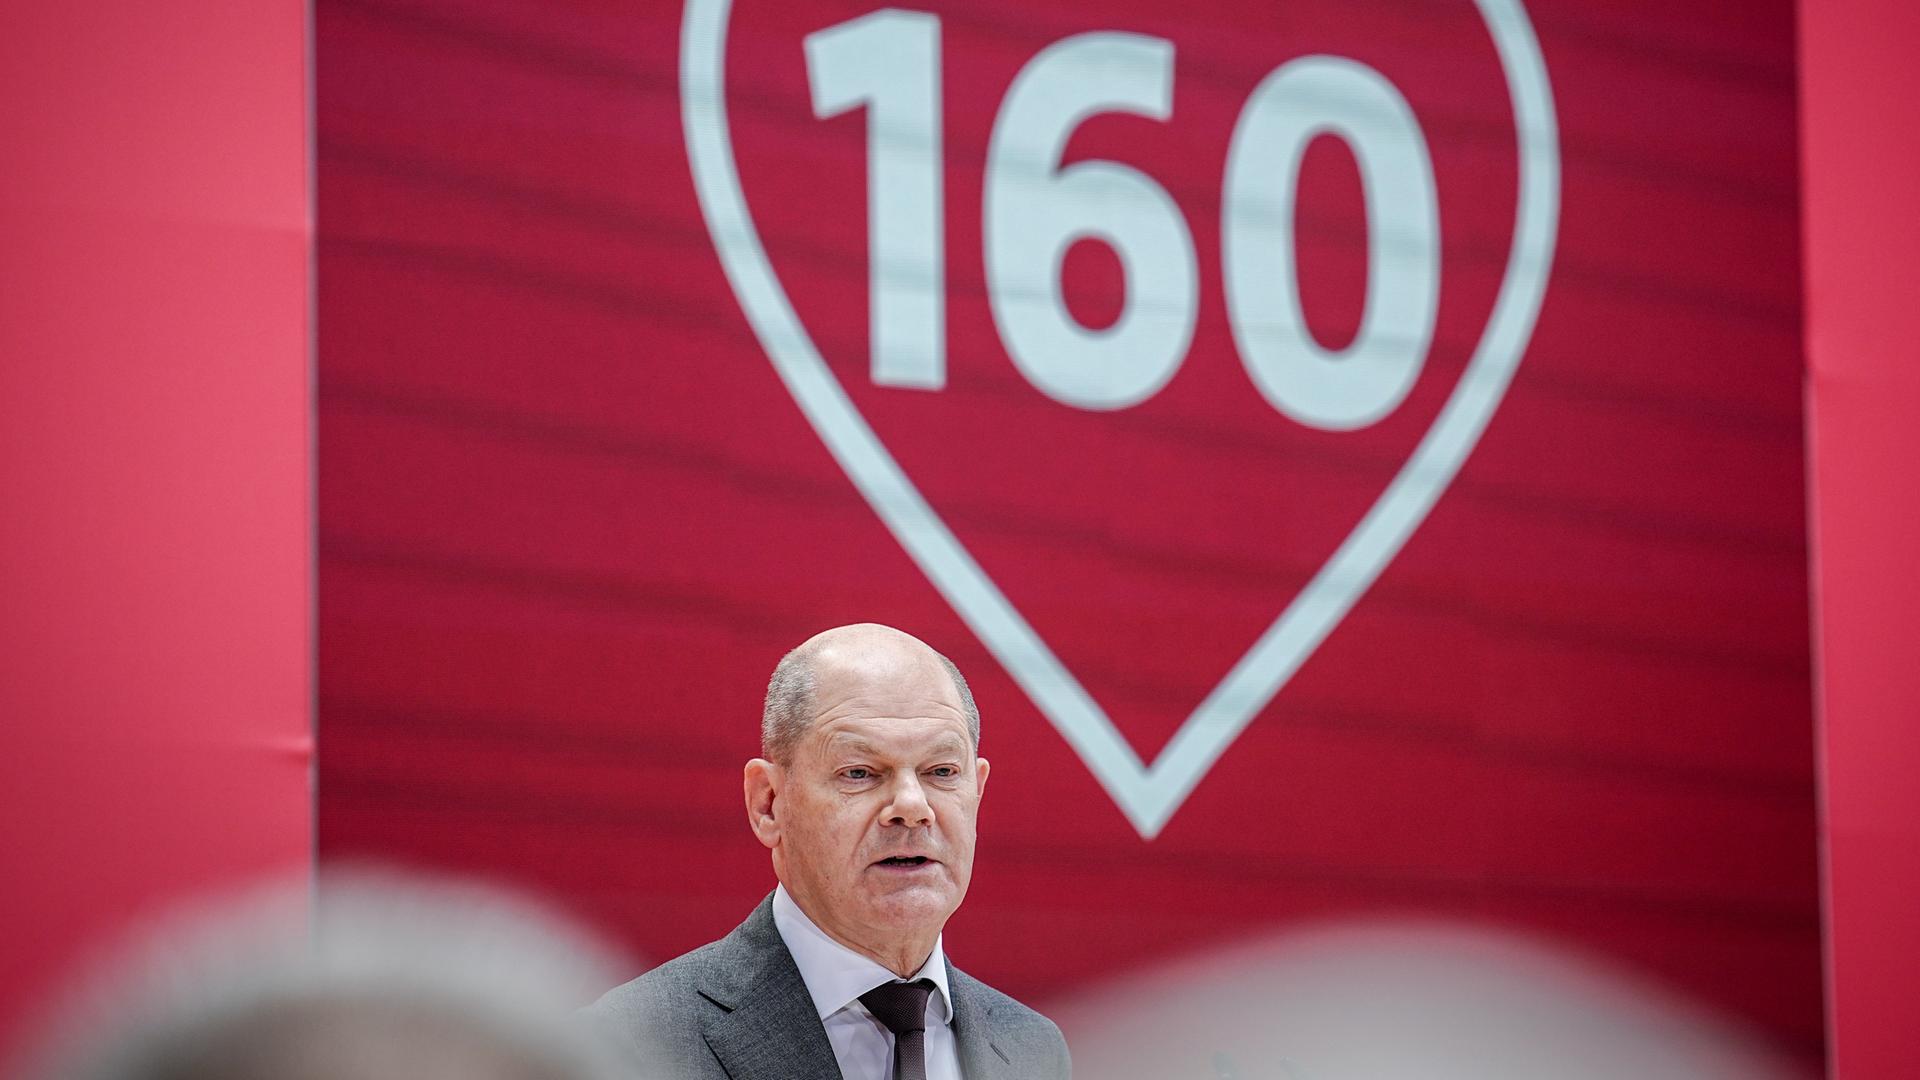 Bundes-Kanzler Olaf Scholz spricht auf dem Fest-Akt zu 160 Jahren SPD. Er steht vor einem Herz mit der Zahl 160 darin.